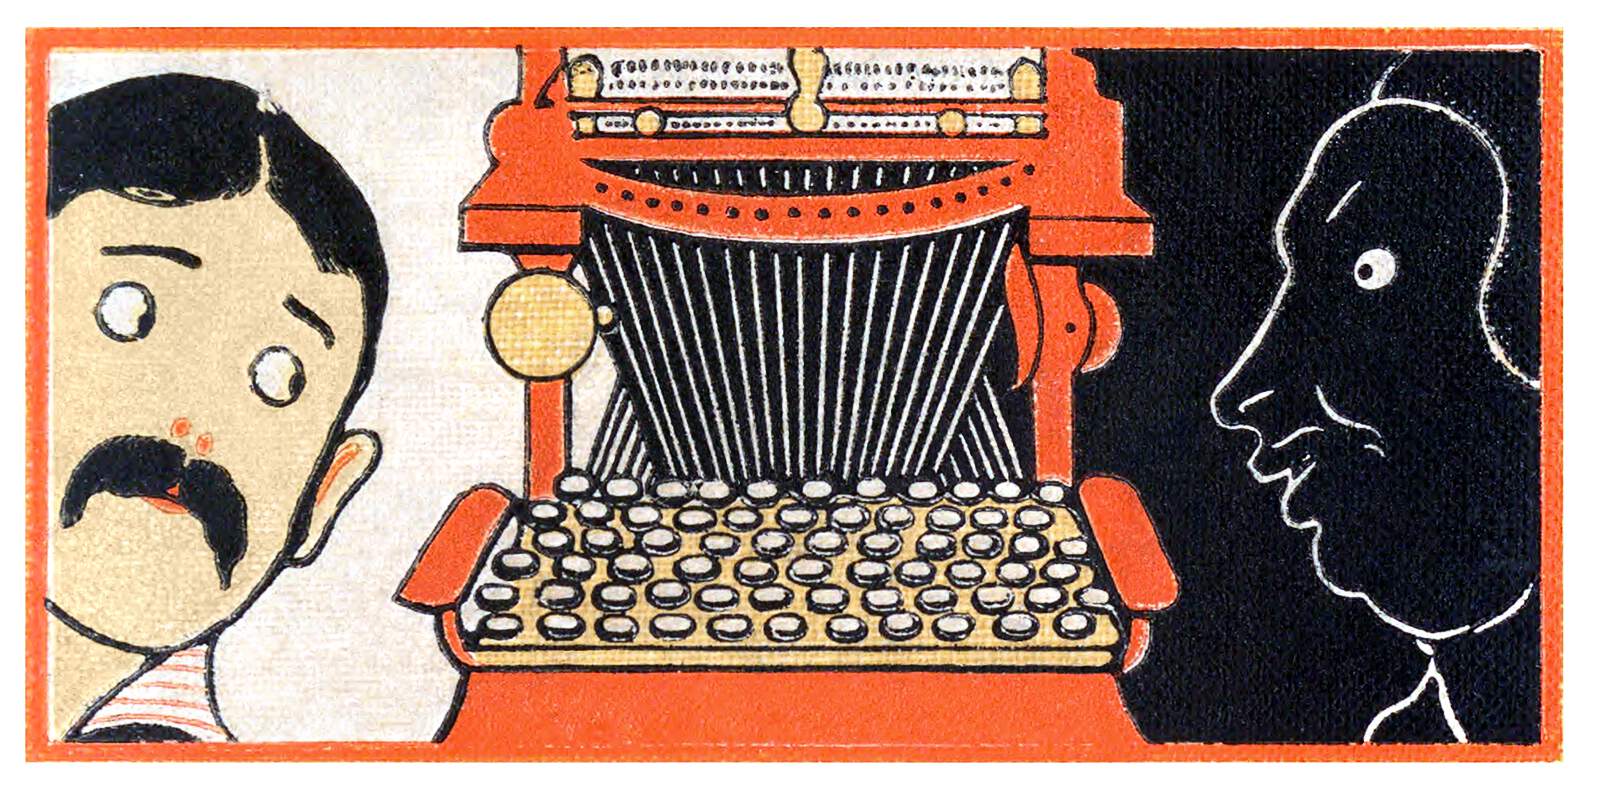 Un debuxo dunha máquina de escribir con dúas caras ollando para ela: unha dun home preocupado e outra dunha pantasma con aparentes malas intencións.